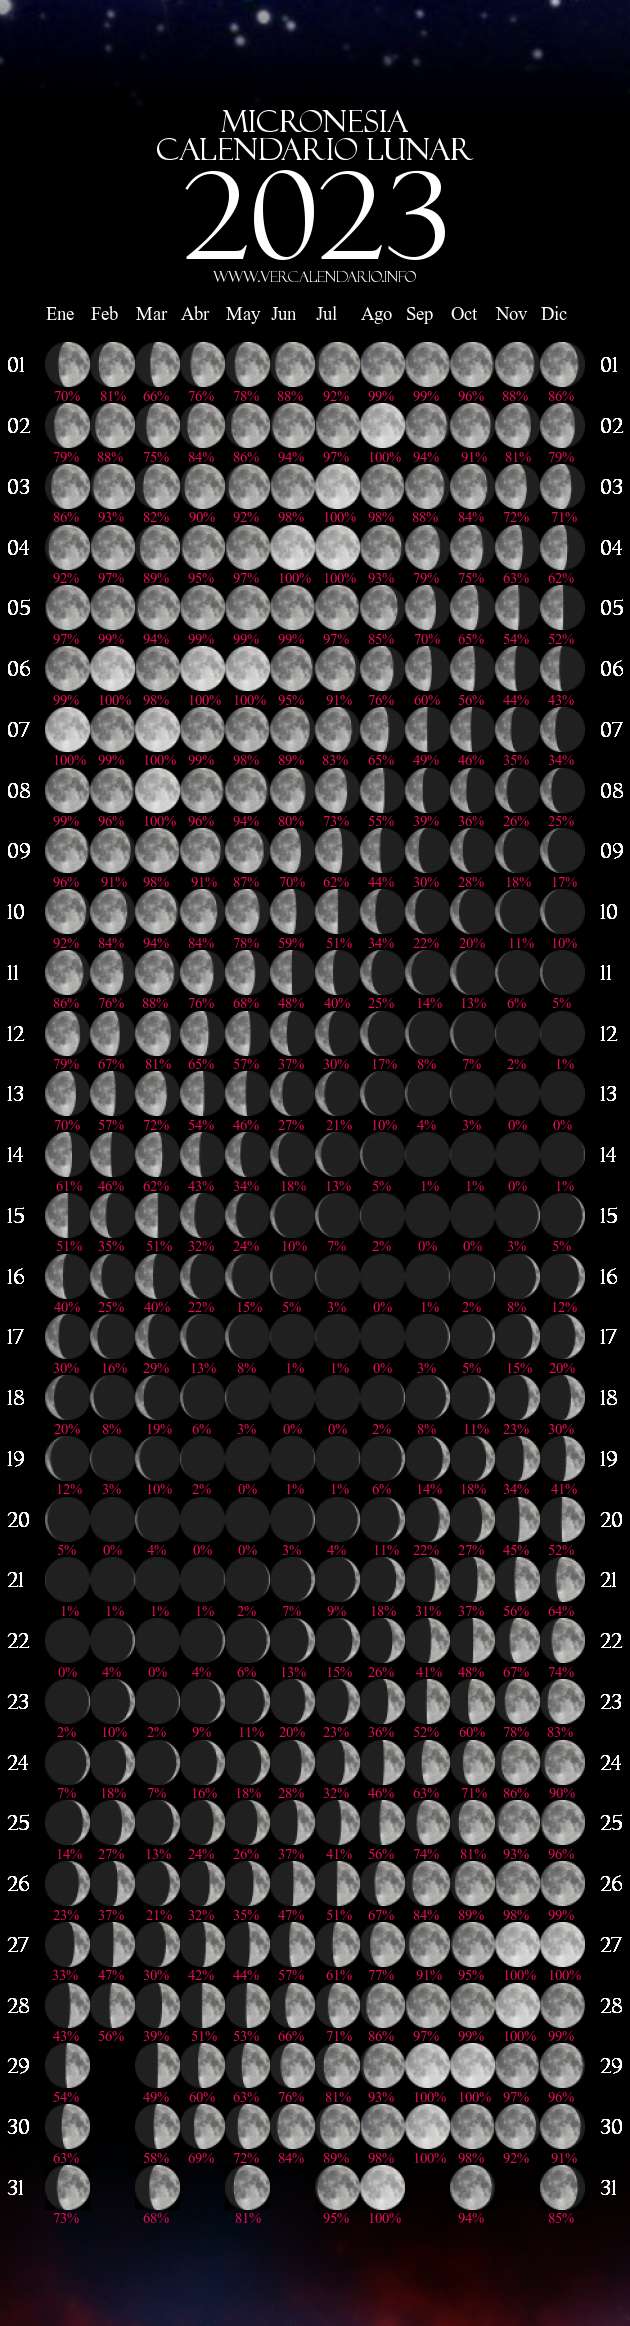 Calendario Lunar 2023 (Micronesia)